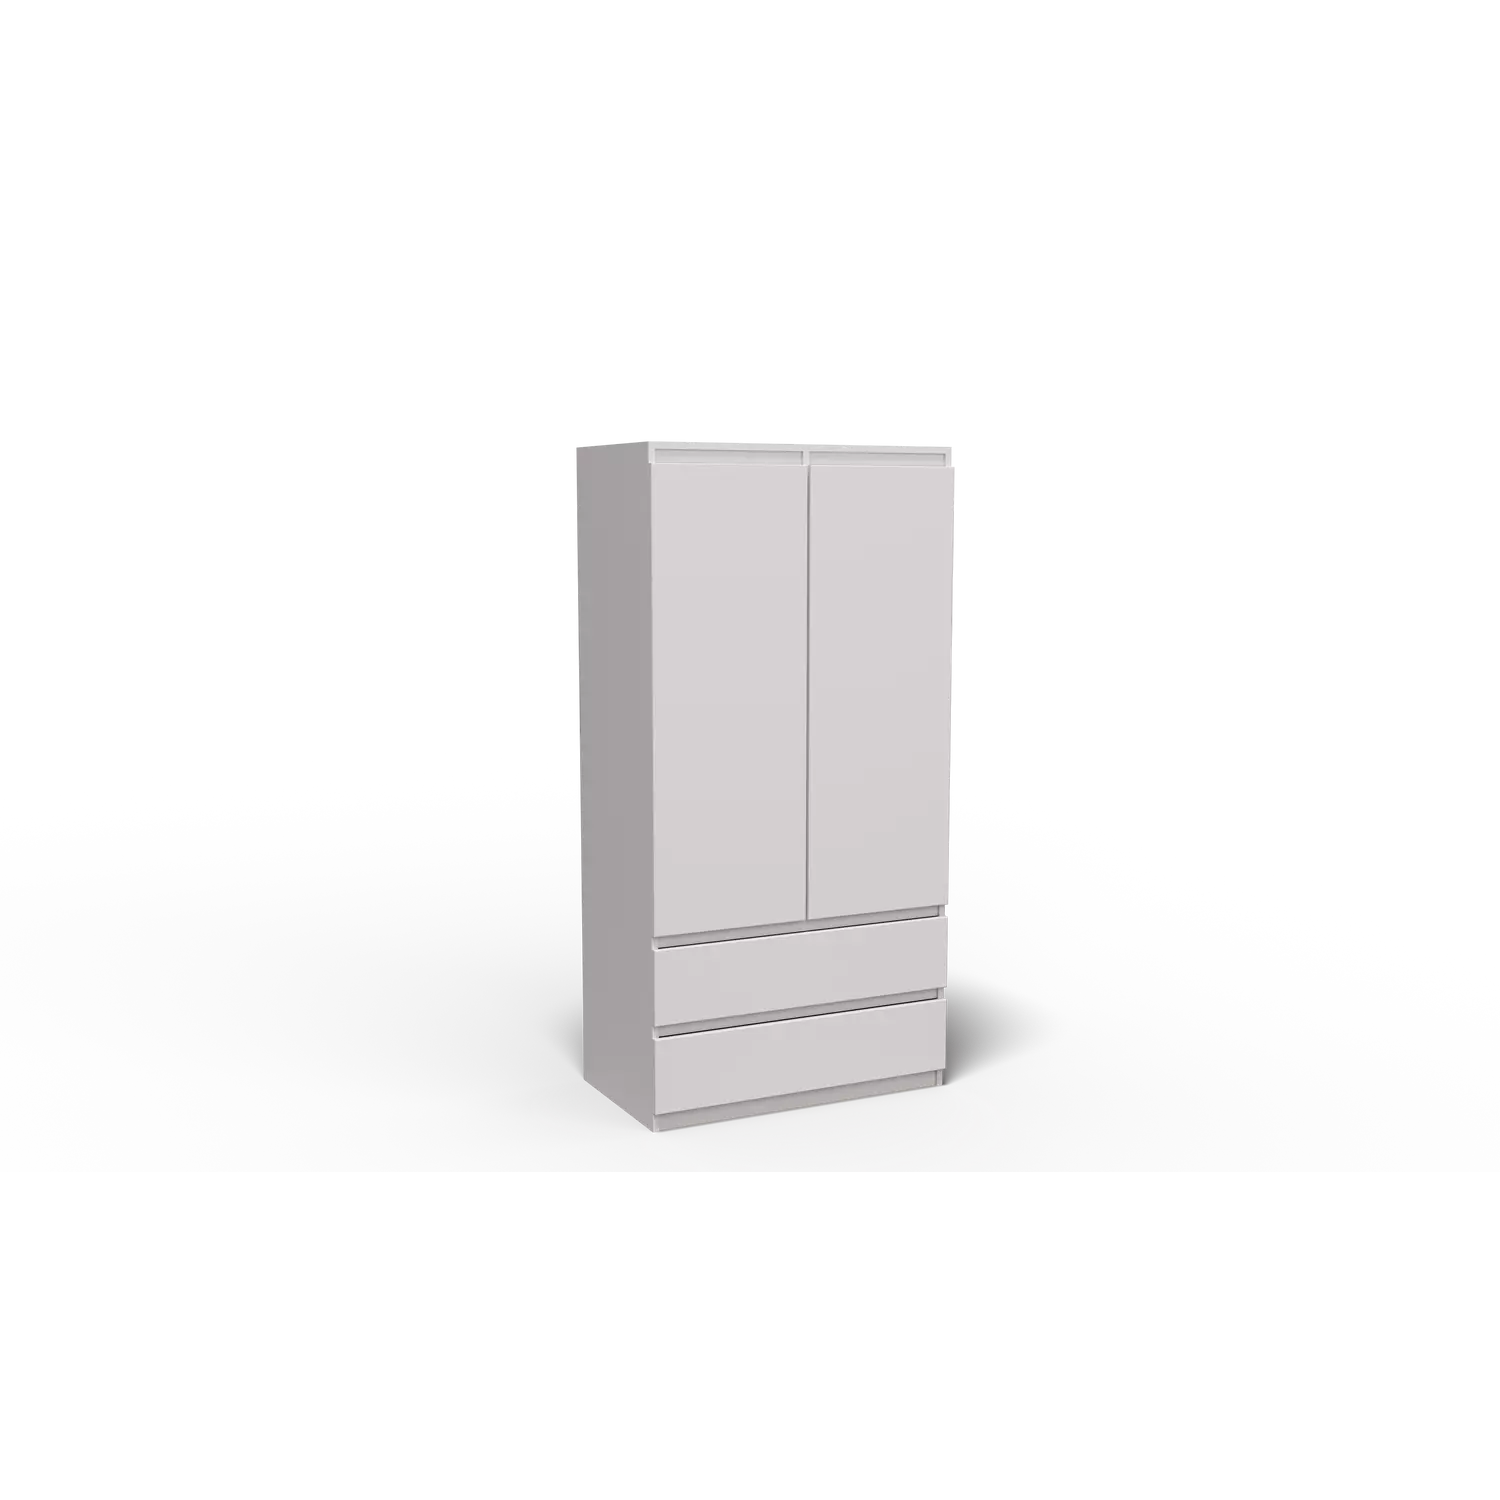 Merg 2 ajtós - 2 fiókos gardróbszekrény fehér színben